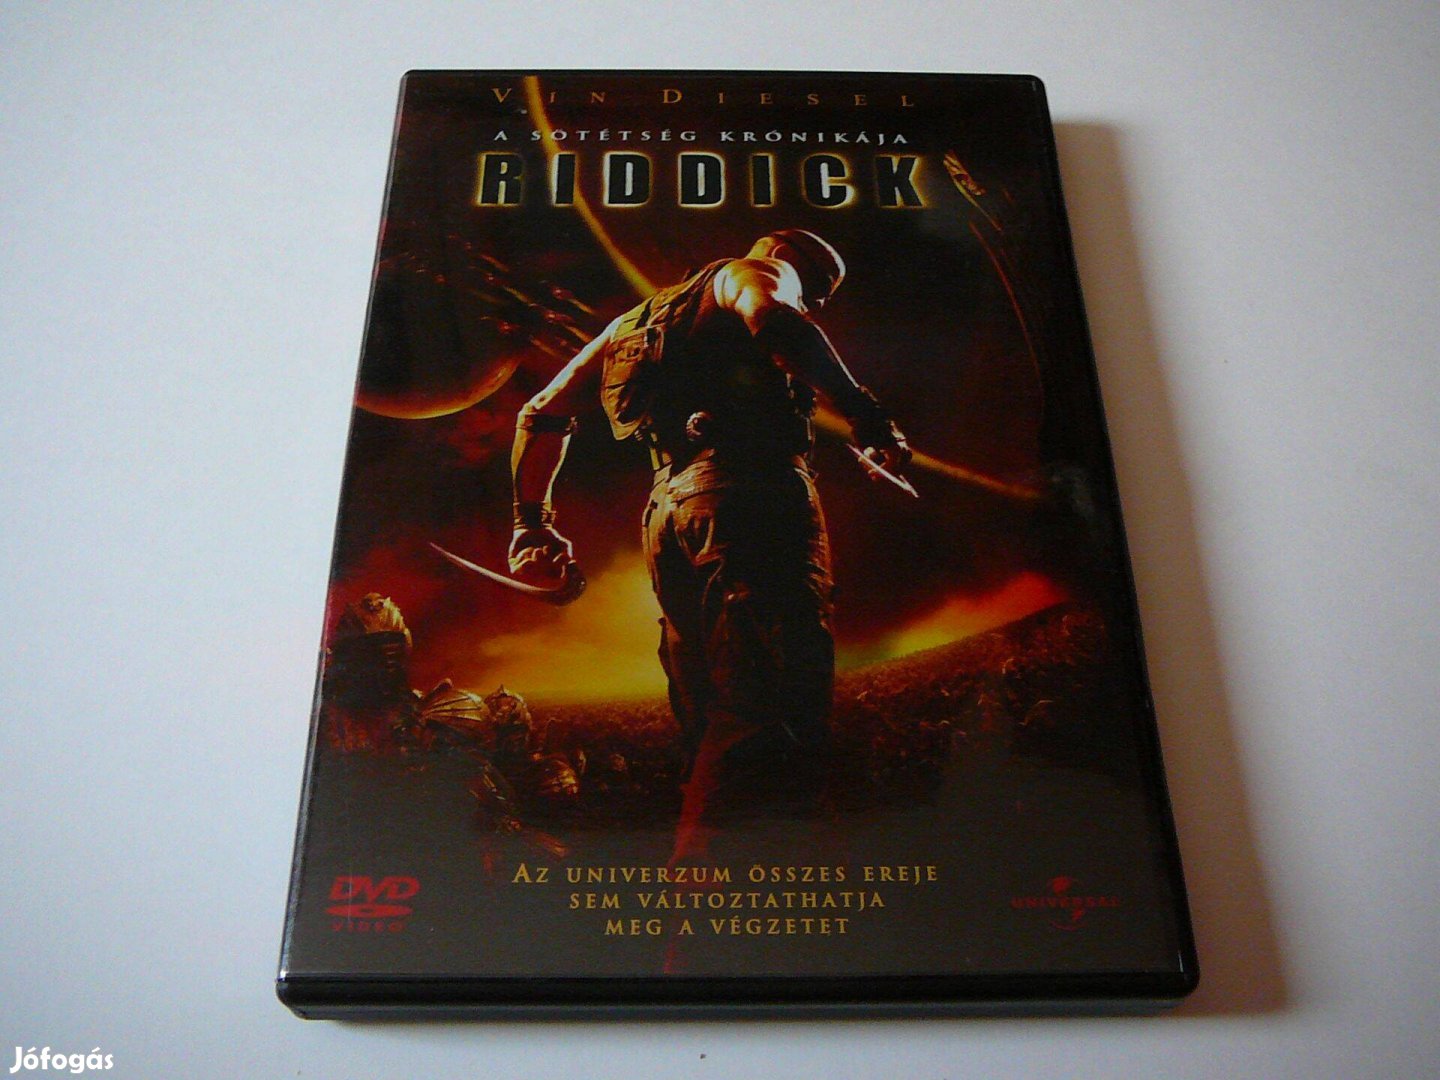 Riddick - A sötétség krónikája - Vin Diesel DVD Film - Szinkronos!